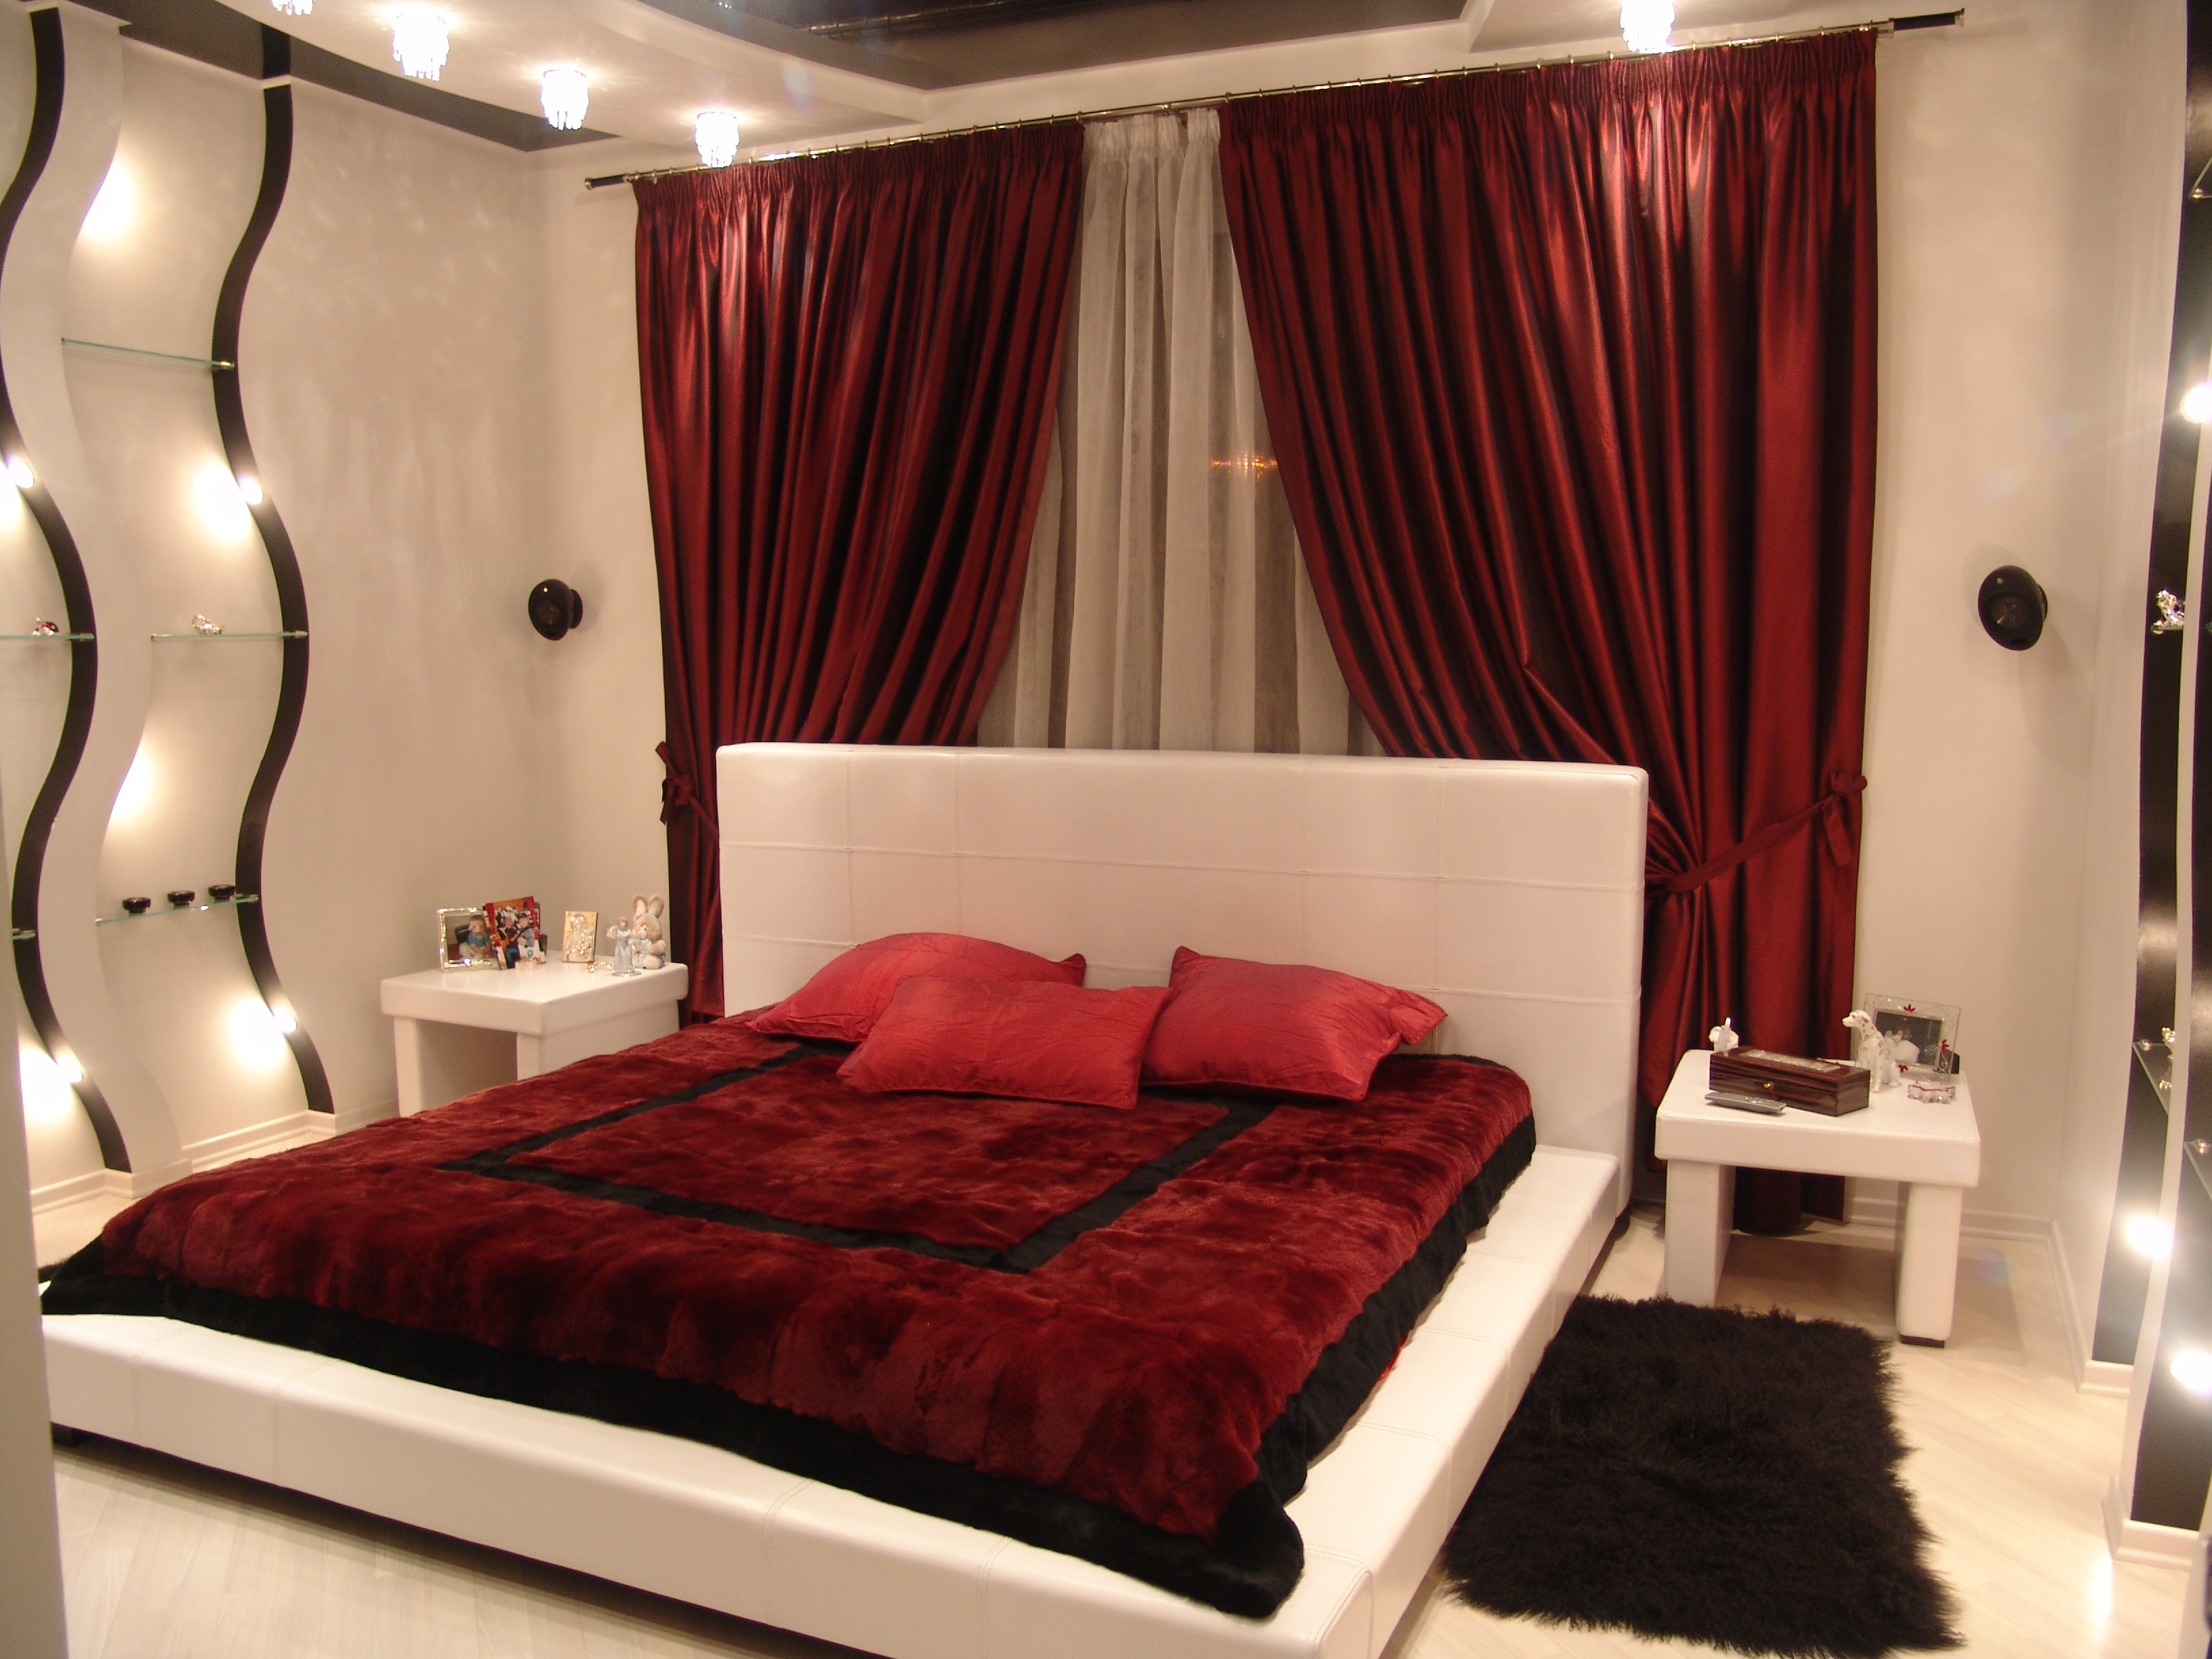 Спальня в бежево-красных тонах » Картинки и фотографии дизайна квартир .